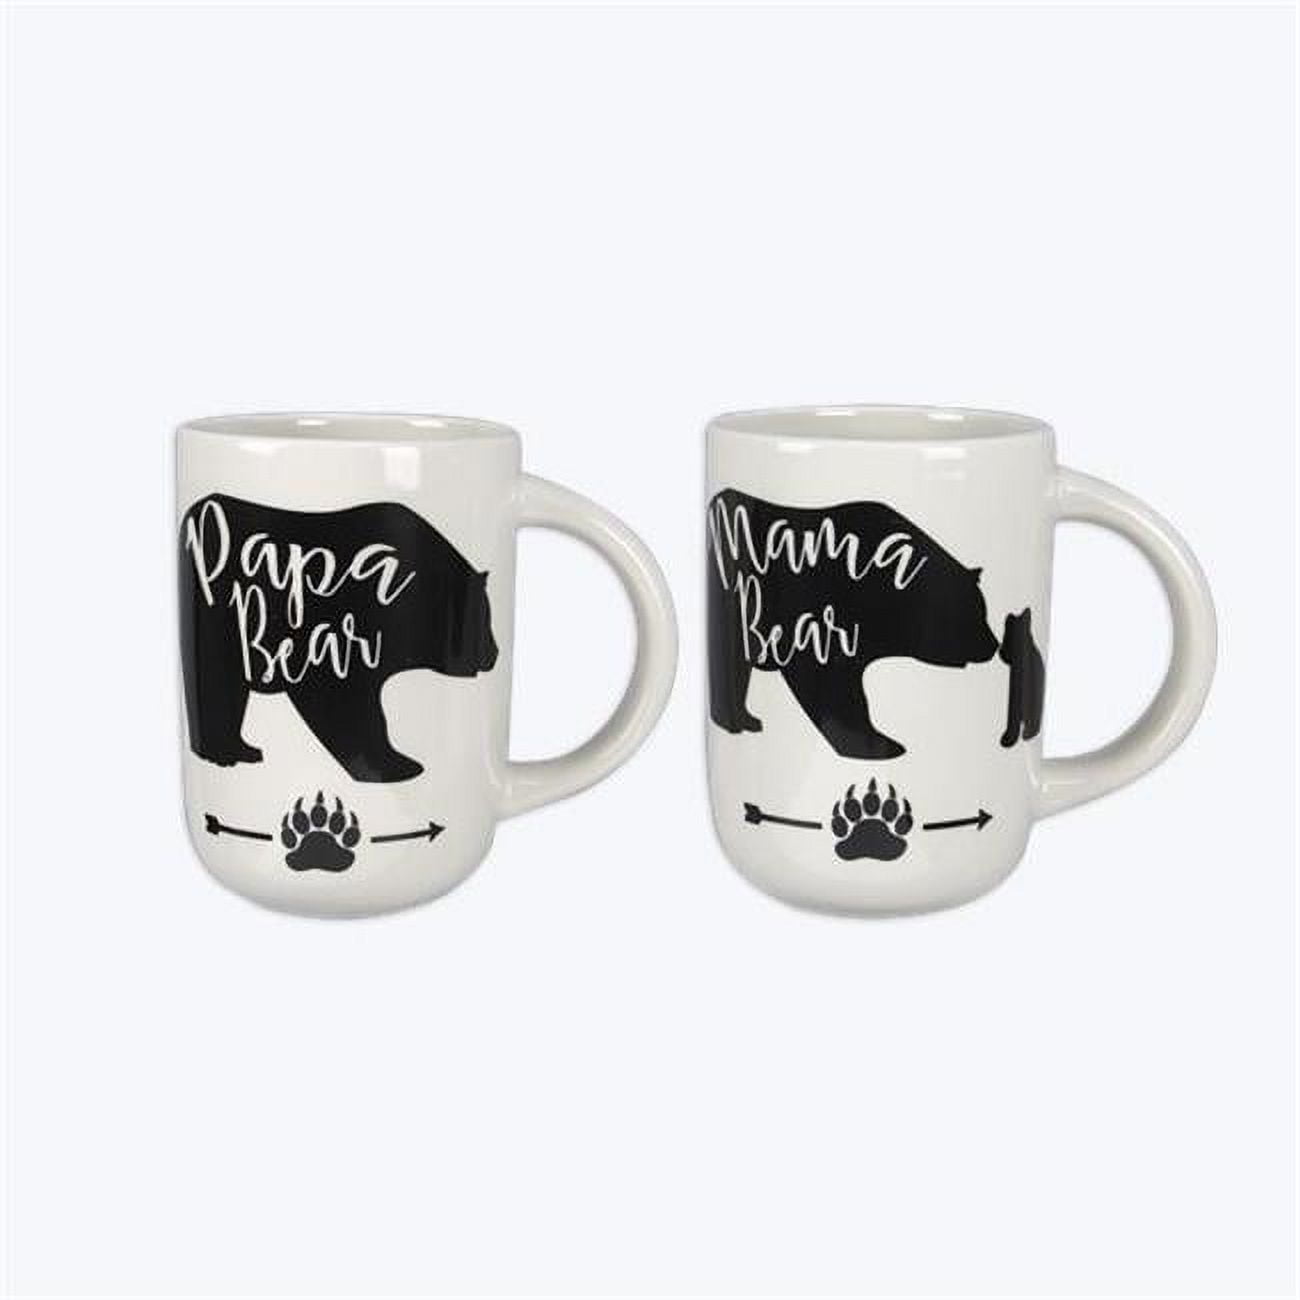 Mama, Papa & Baby Bear Mug Set – Grande Trunke Home